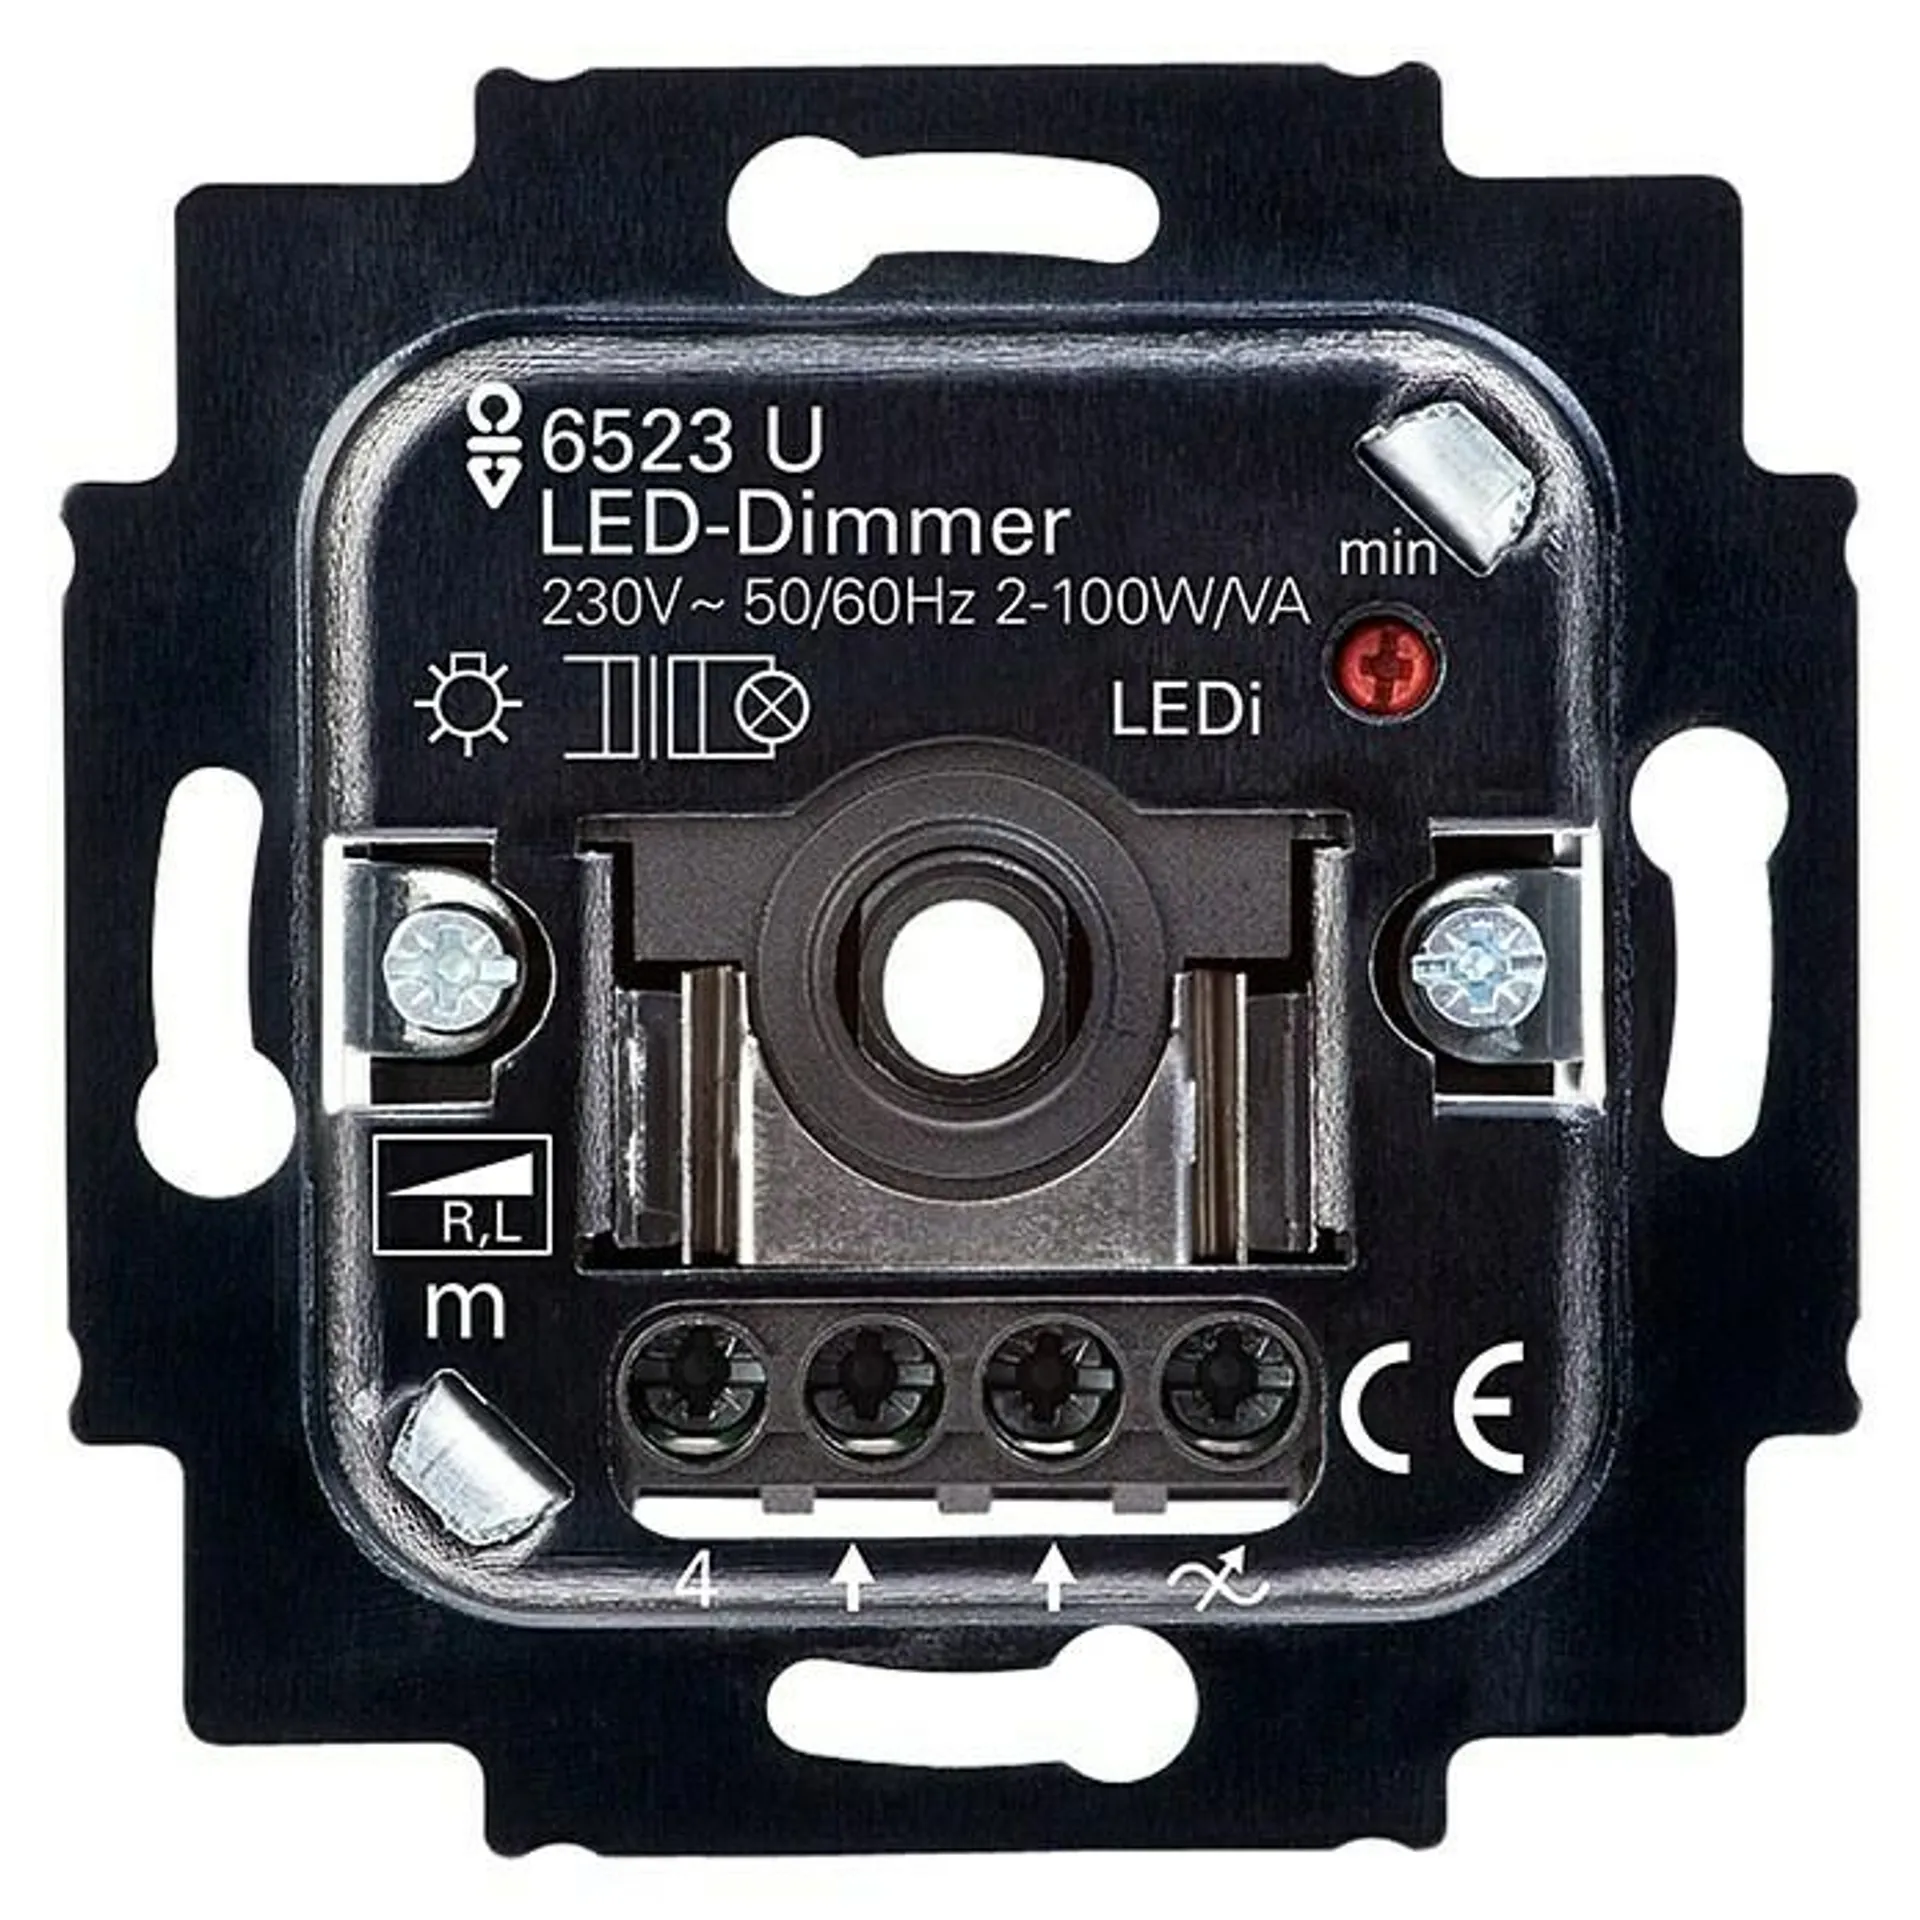 Busch-Jaeger LED-Dimmer 6523 U-102